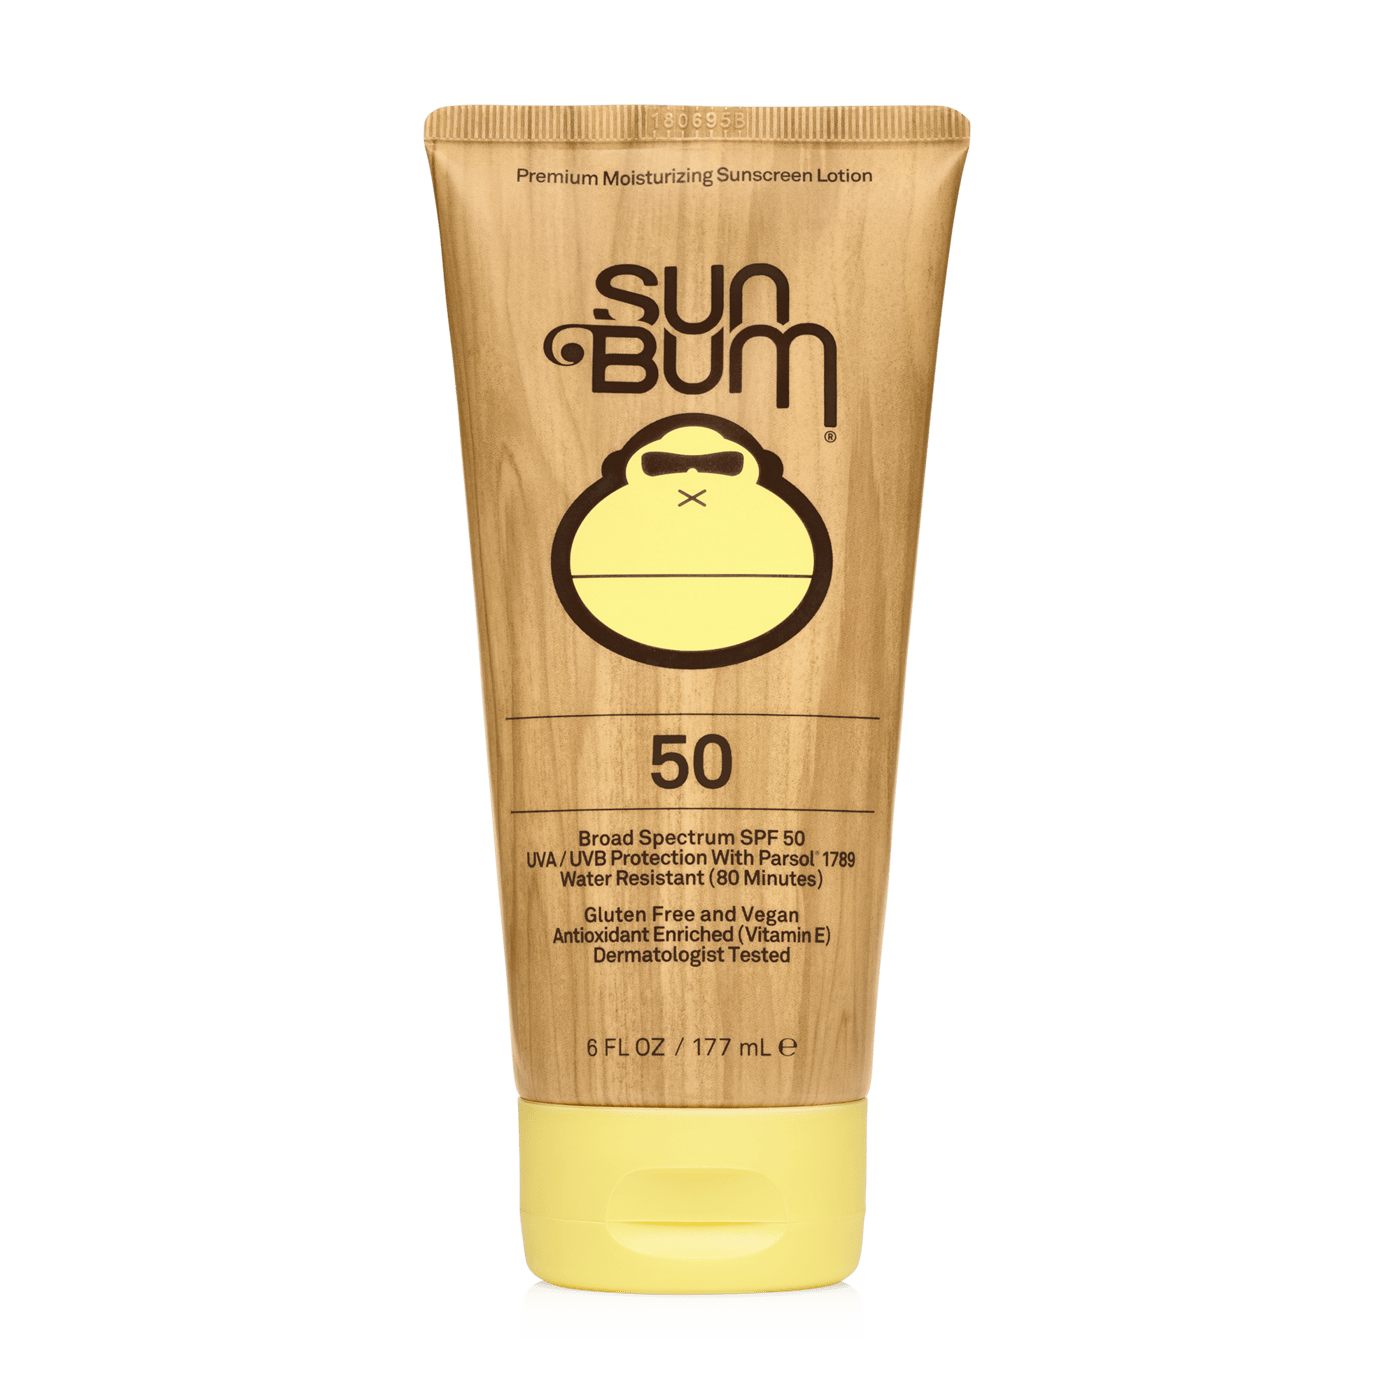 Sun Bum sunscreen Sun Bum Sunscreen Lotion SPF 50